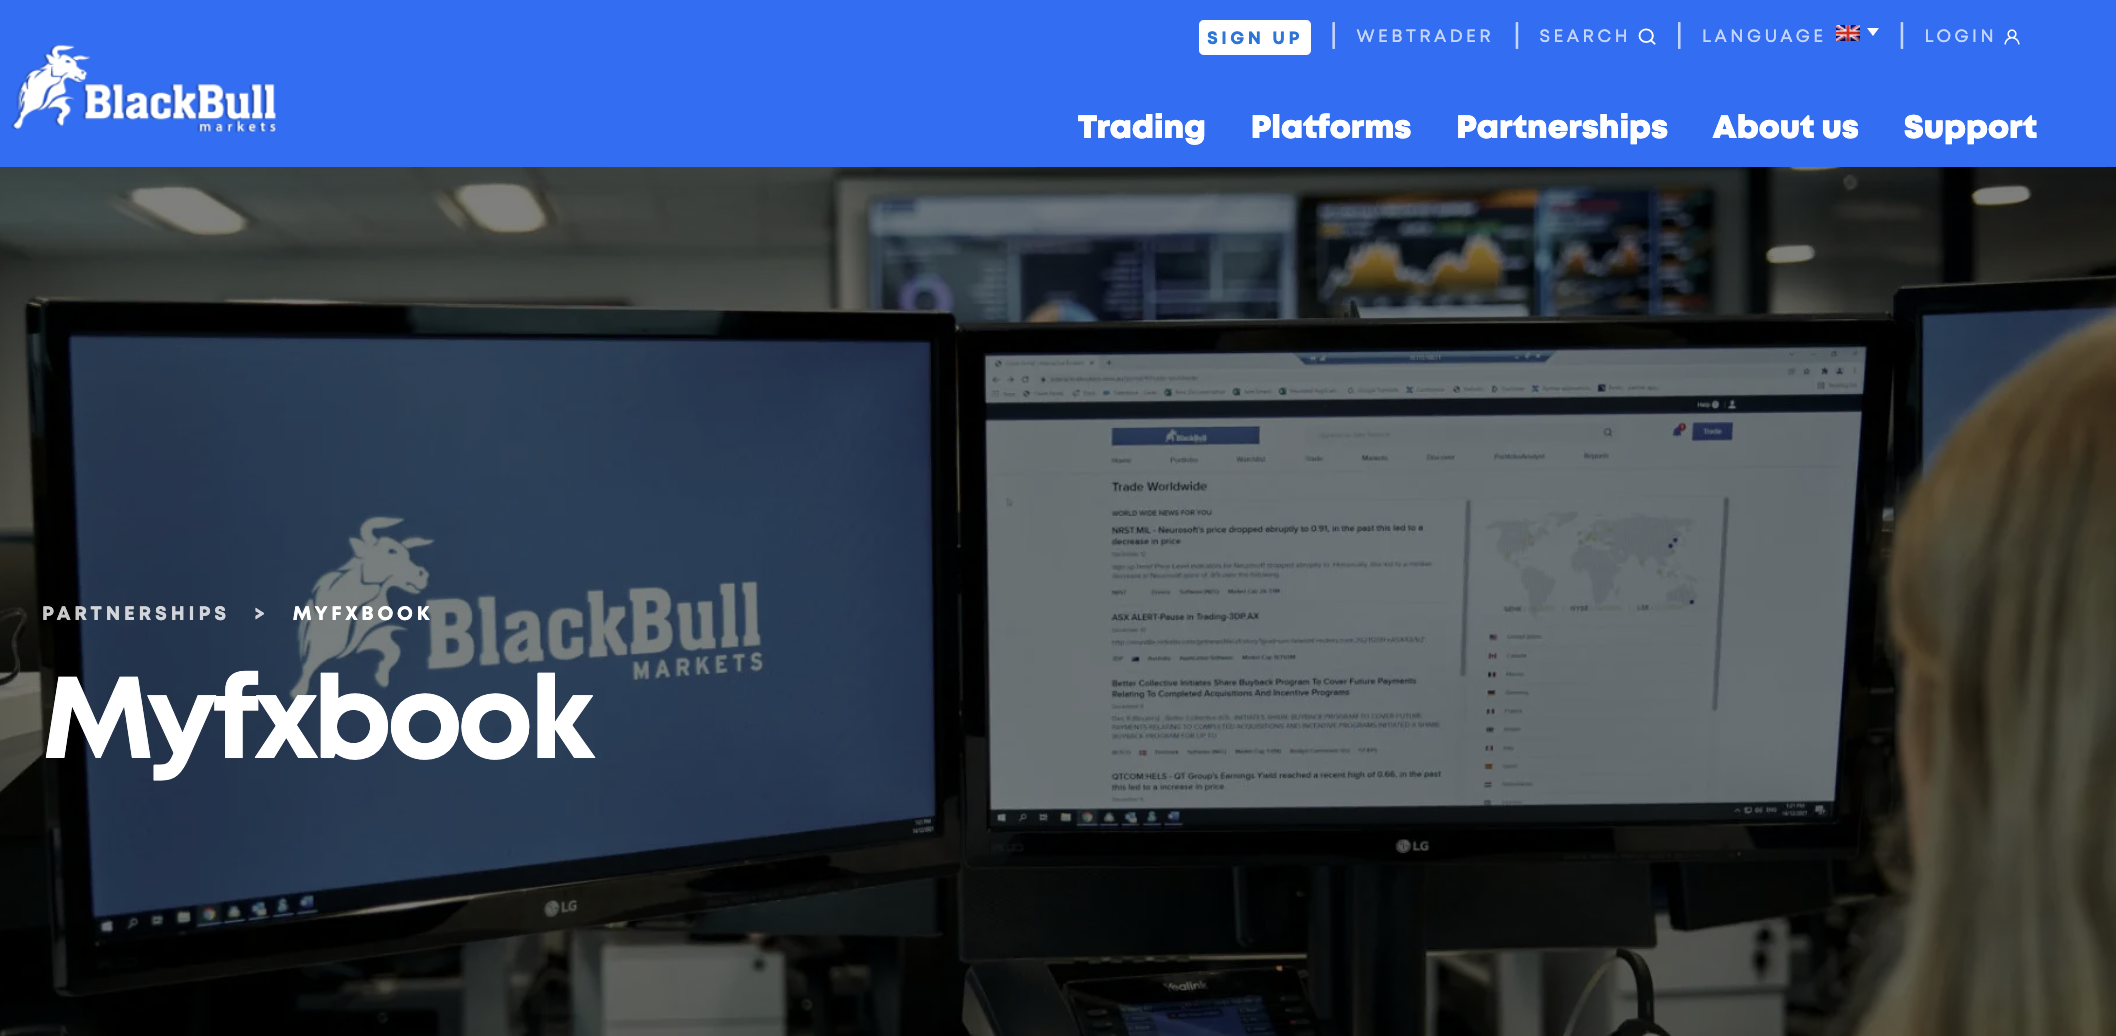 BlackBull Markets MyFxBook integration